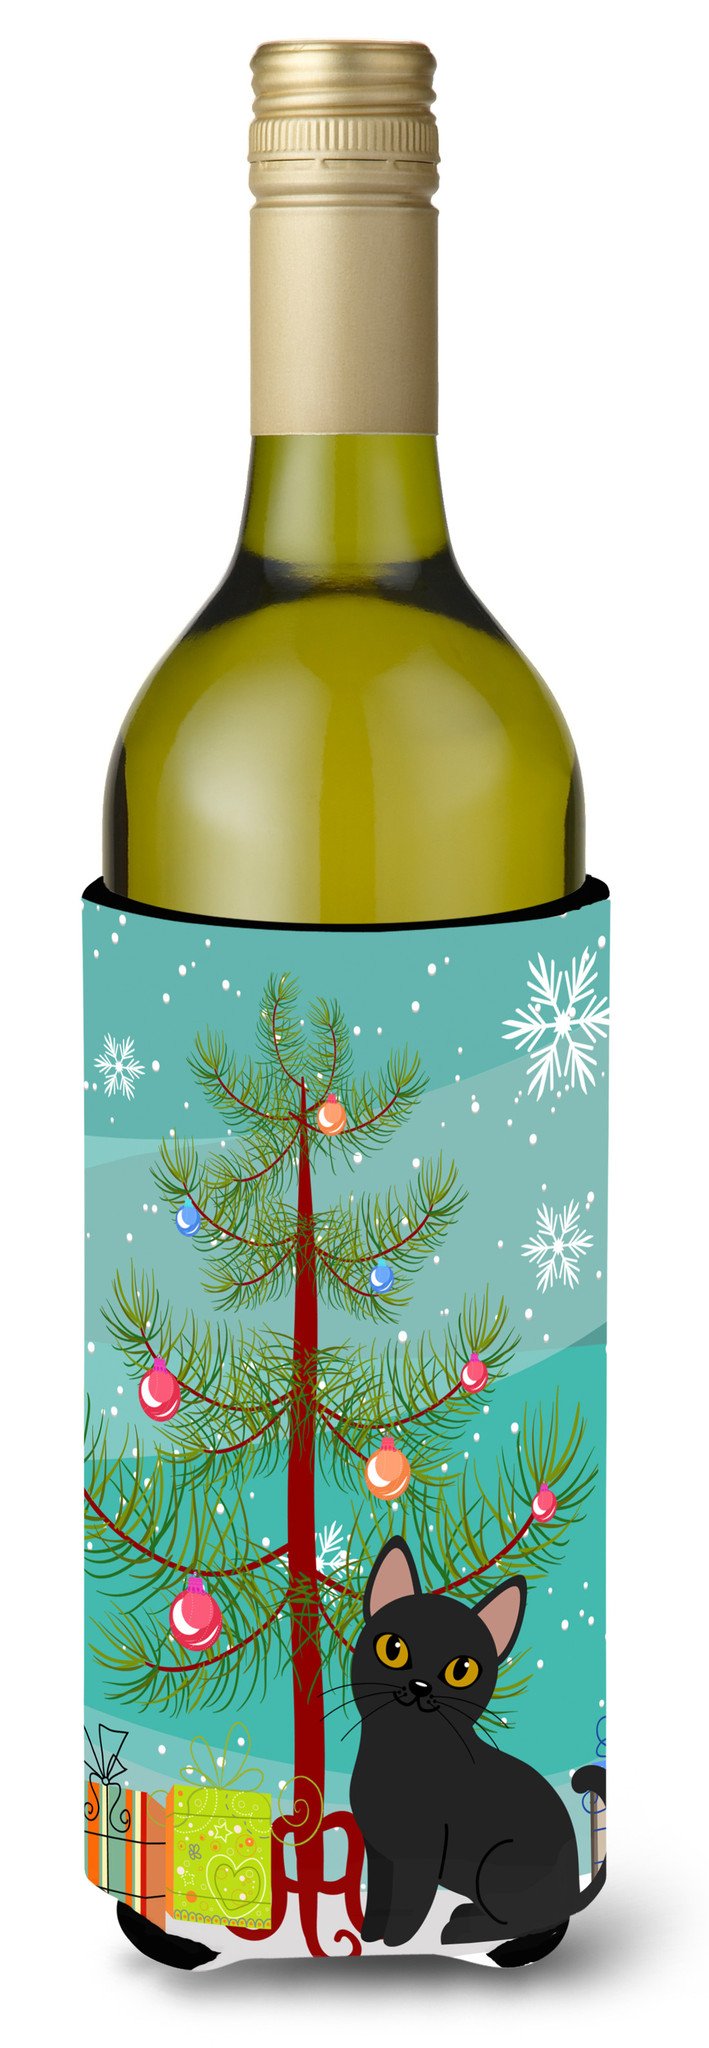 Bombay Cat Merry Christmas Tree Wine Bottle Beverge Insulator Hugger BB4417LITERK by Caroline's Treasures